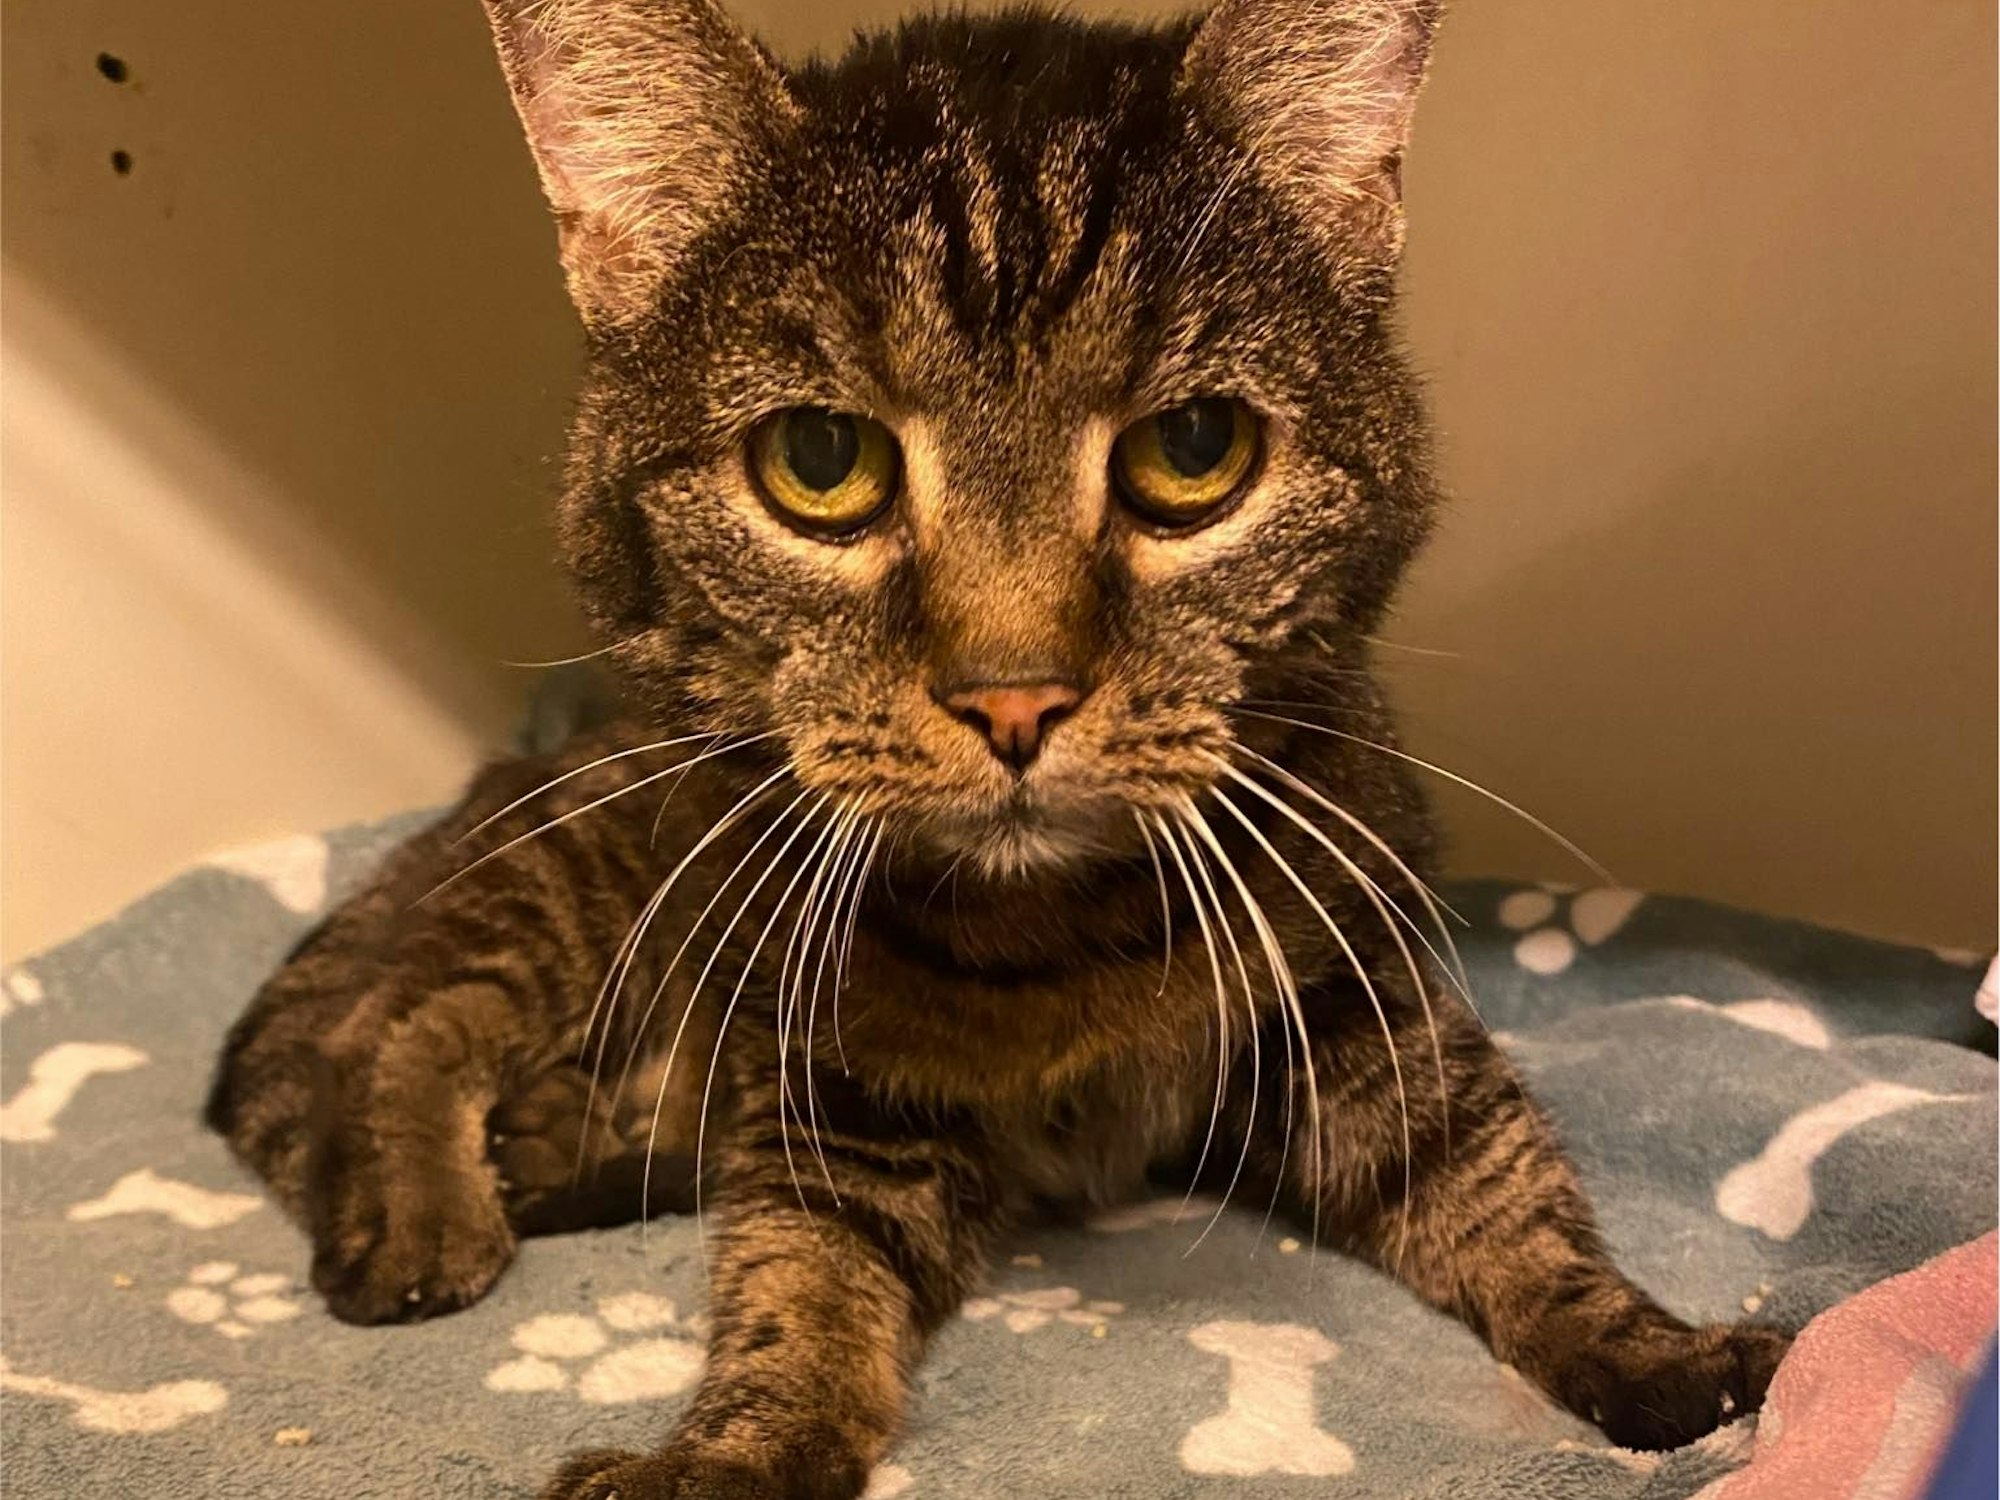 Katze Pucki, 20 Jahre alt, sitzt auf einer Decke.